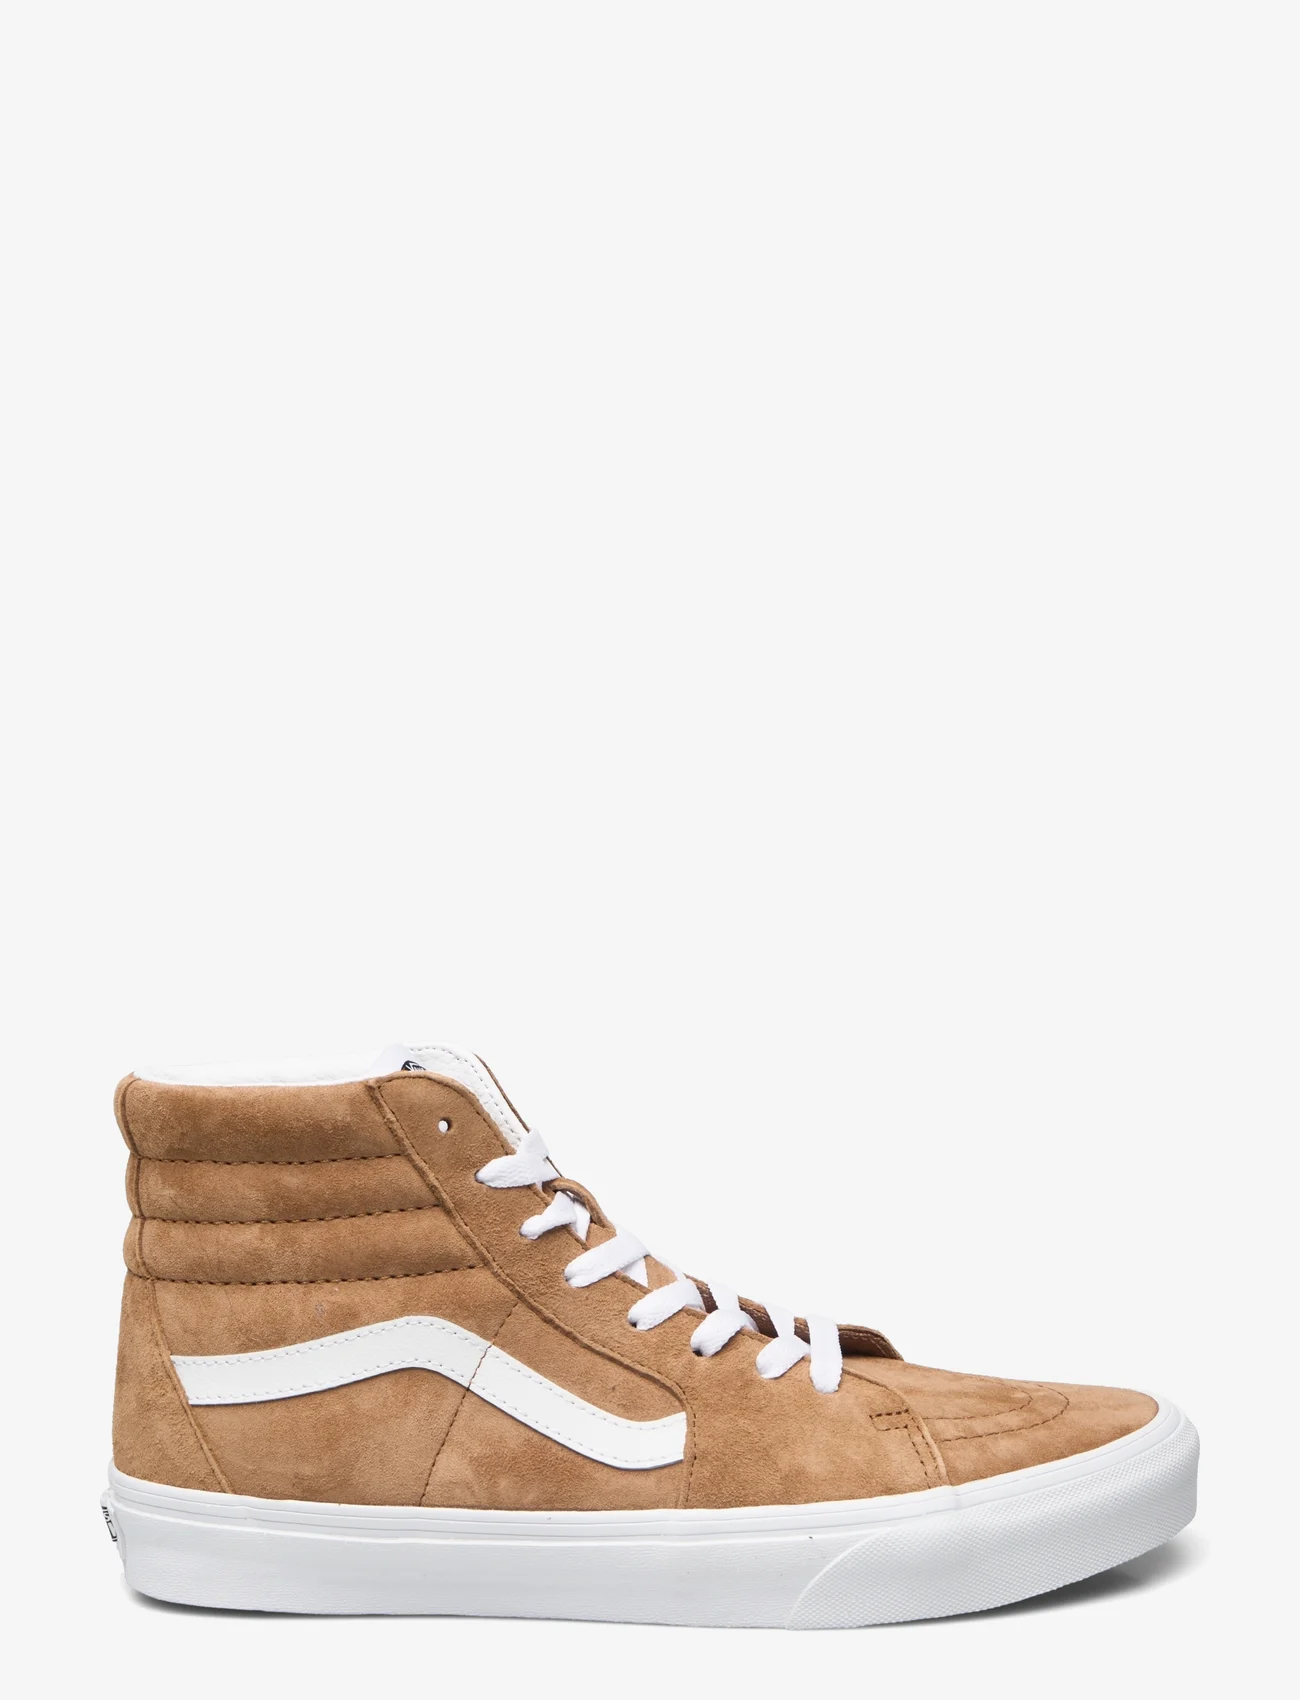 VANS - UA SK8-Hi - høje sneakers - tobacco brown - 1